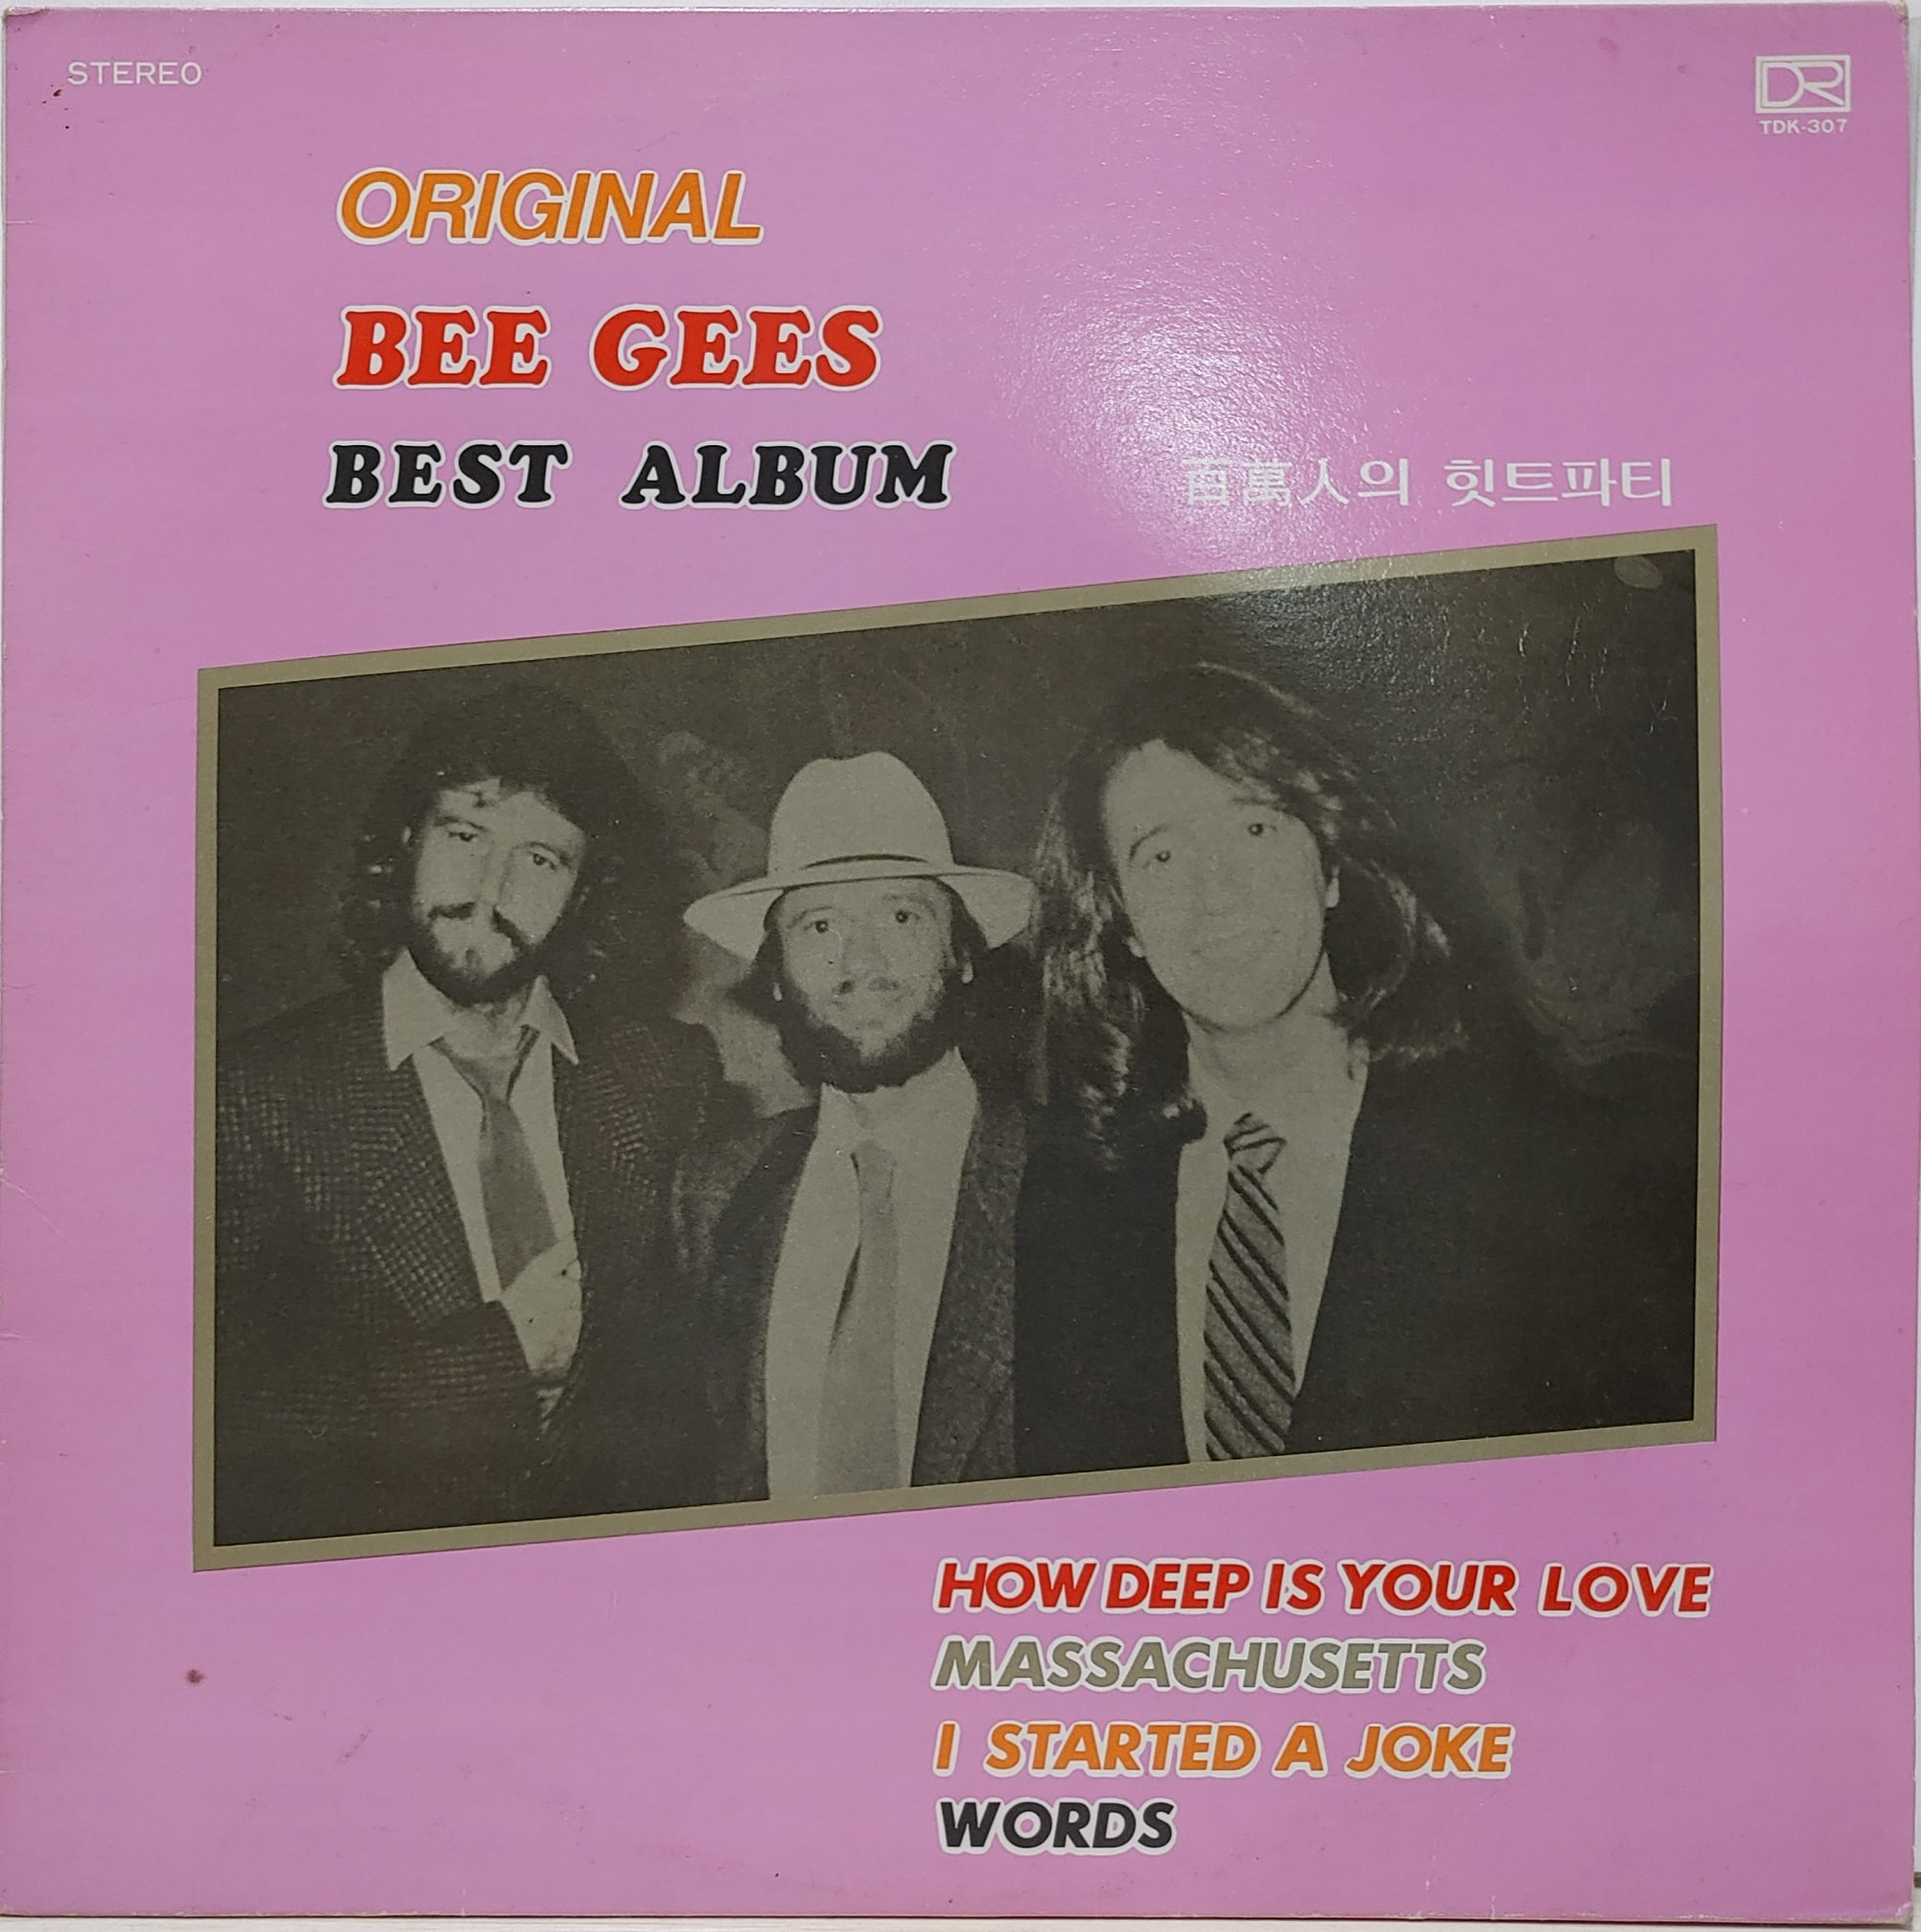 ORIGINAL BEE GEES BEST ALBUM